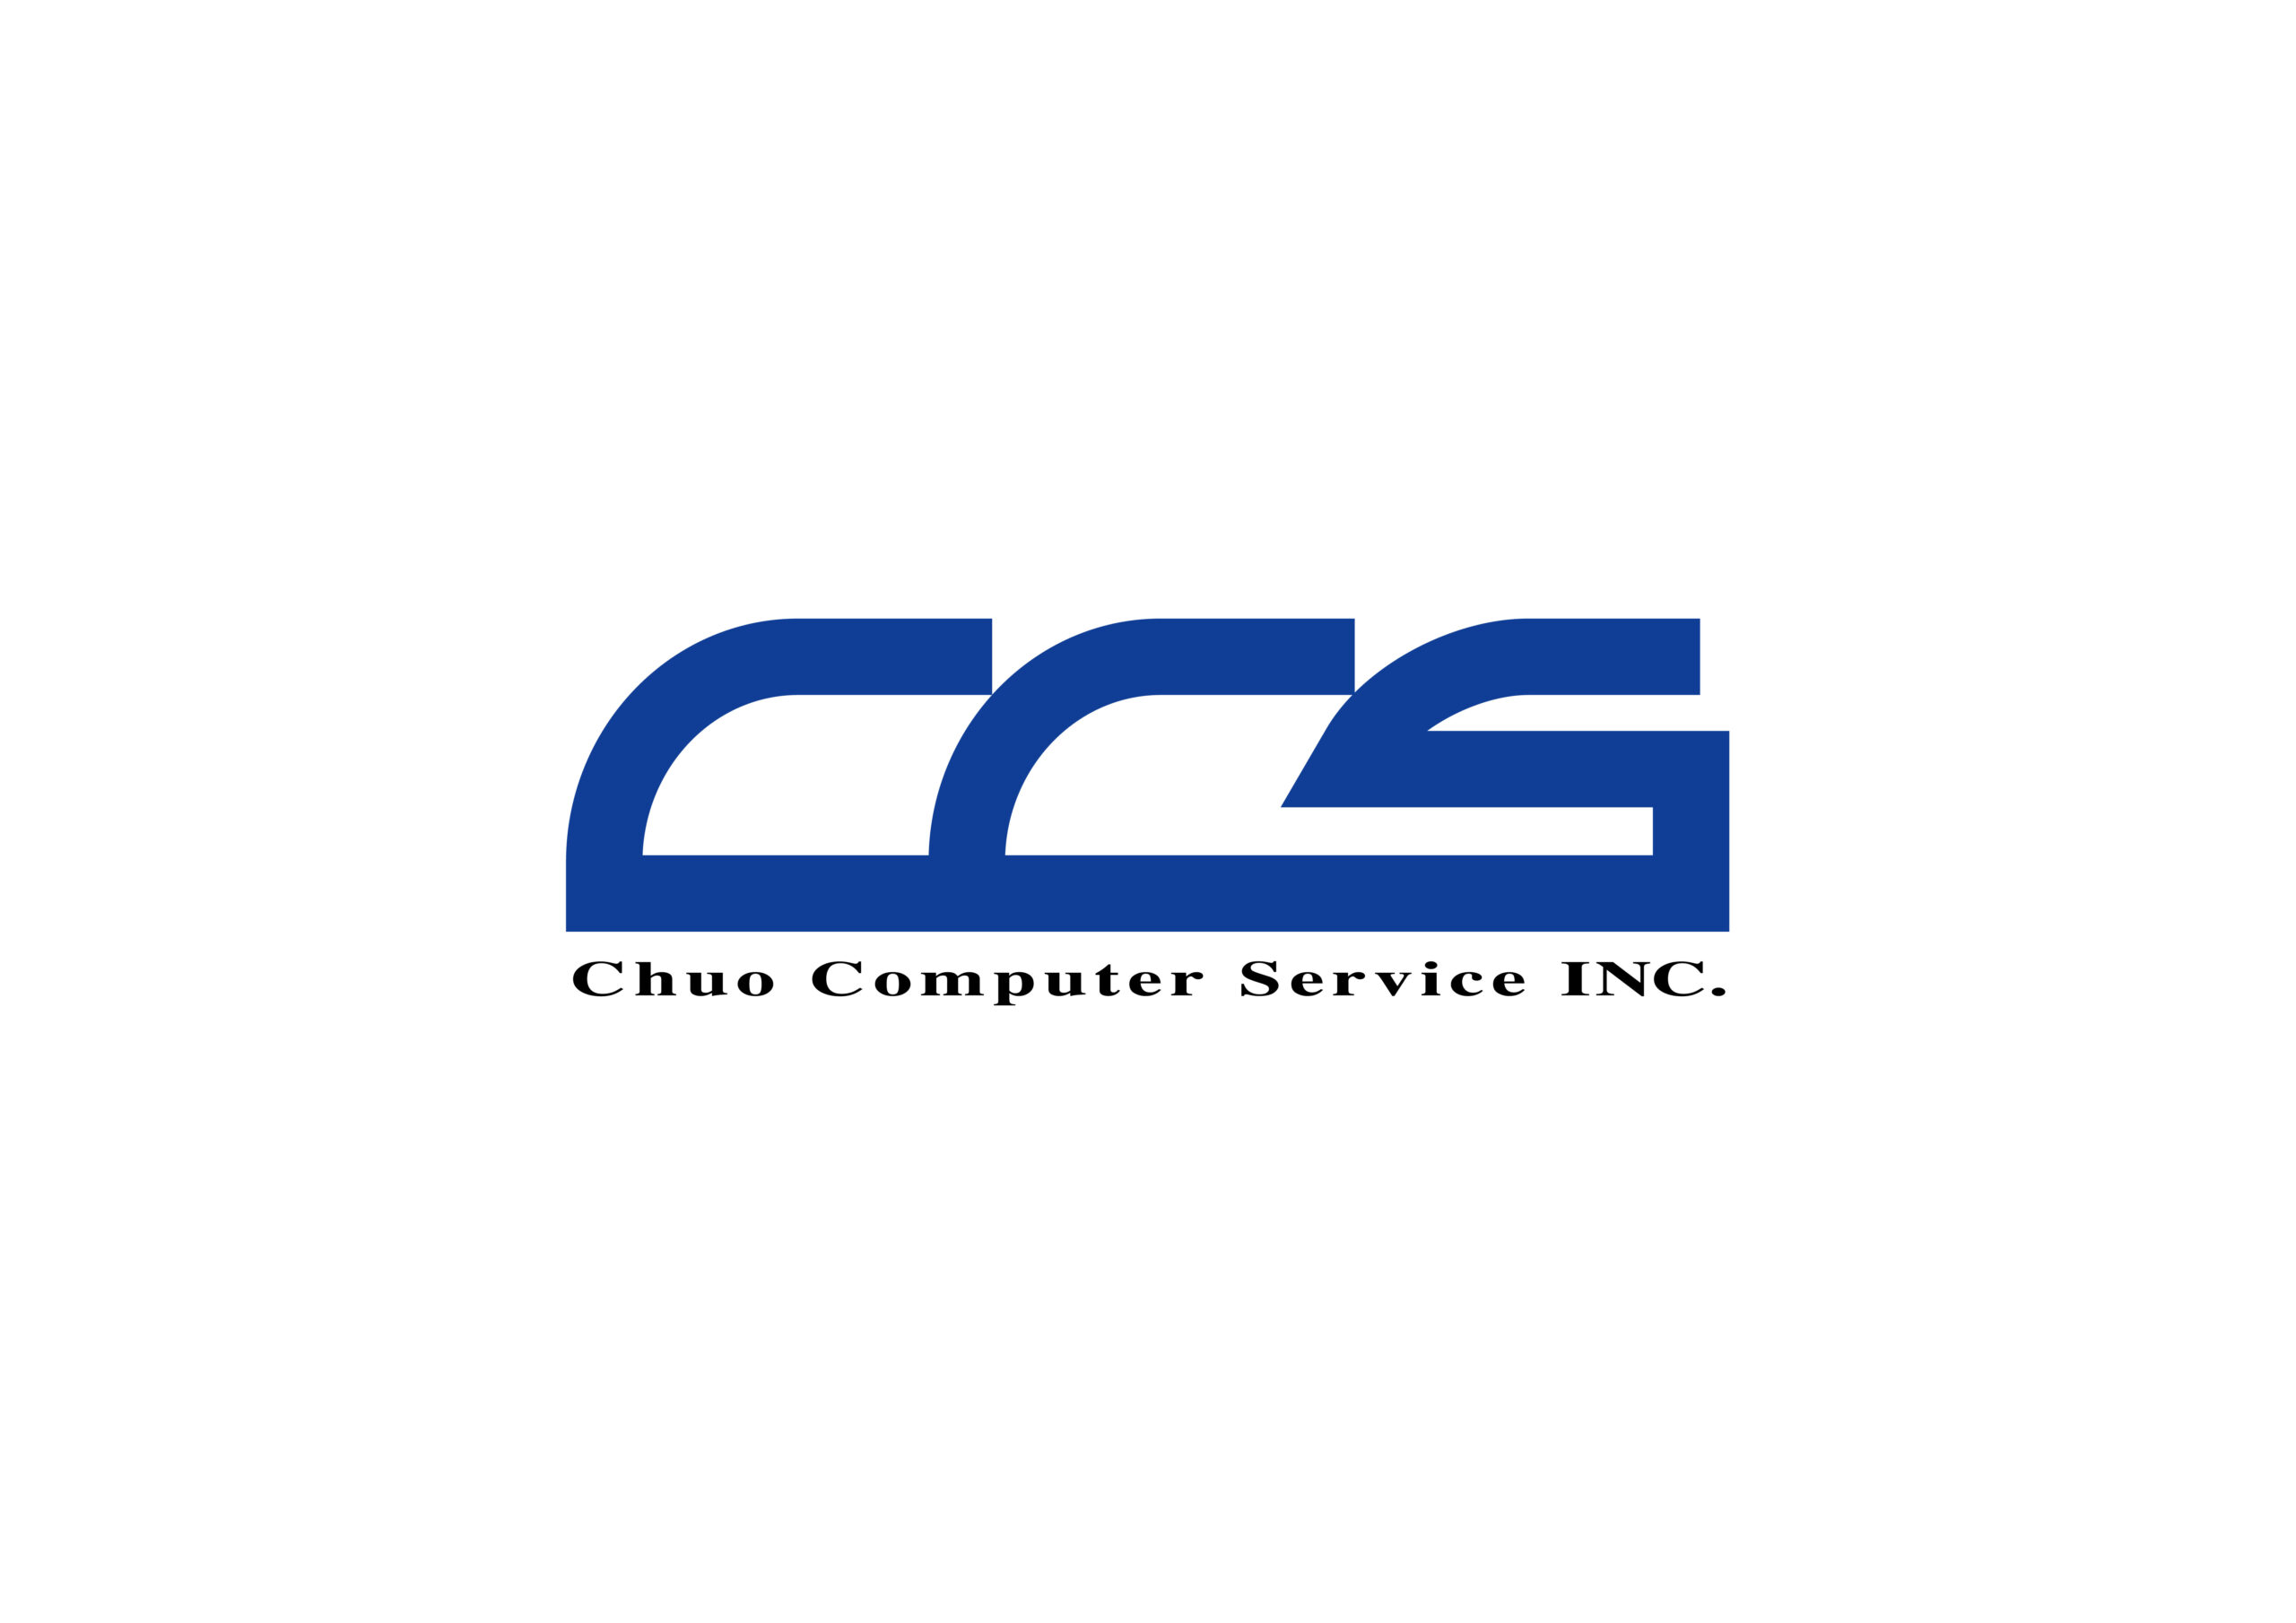 中央コンピューターサービス株式会社のサムネイル